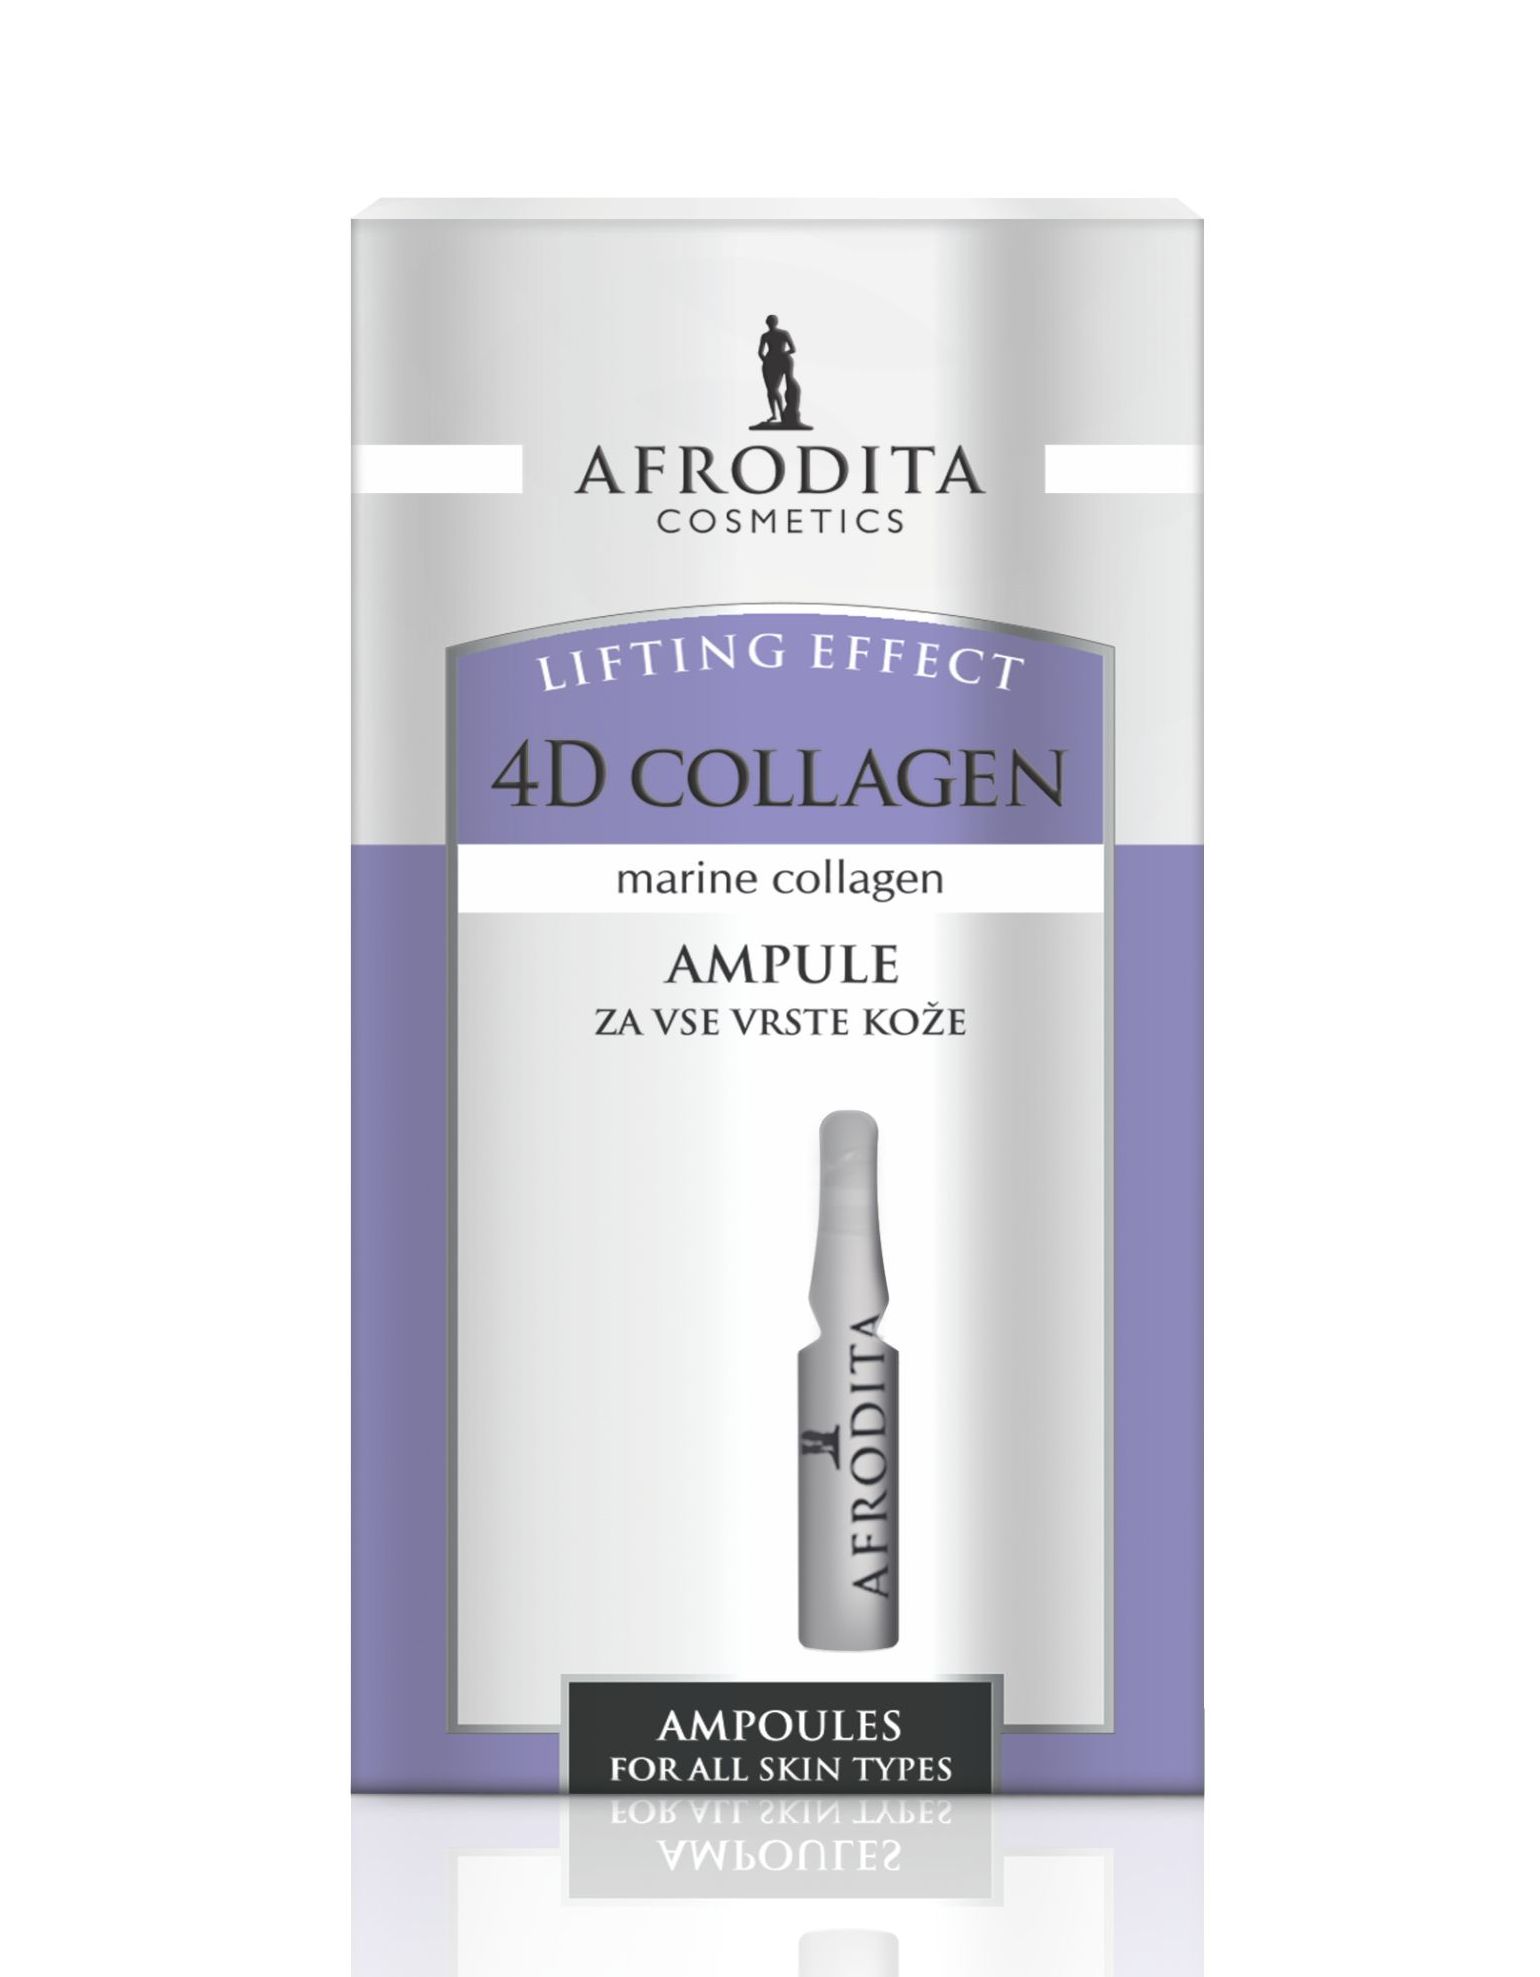 4D collagen - ampule 